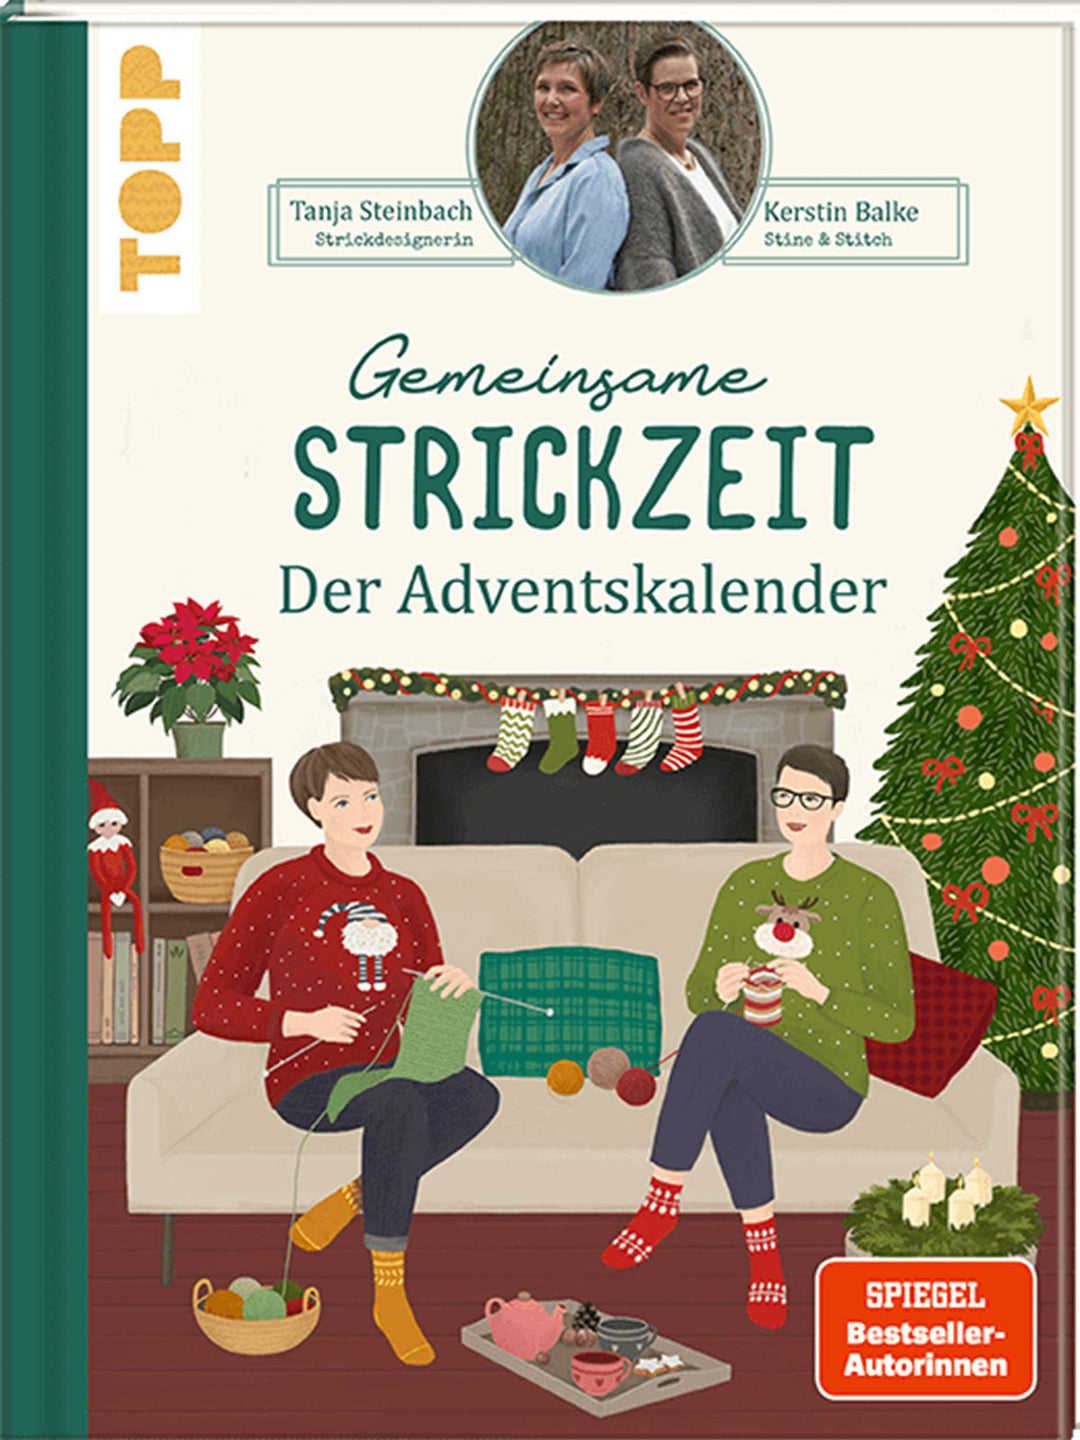 Gemeinsame Strickzeit Adventskalender - Tanja Steinbach & Kerstin Balke